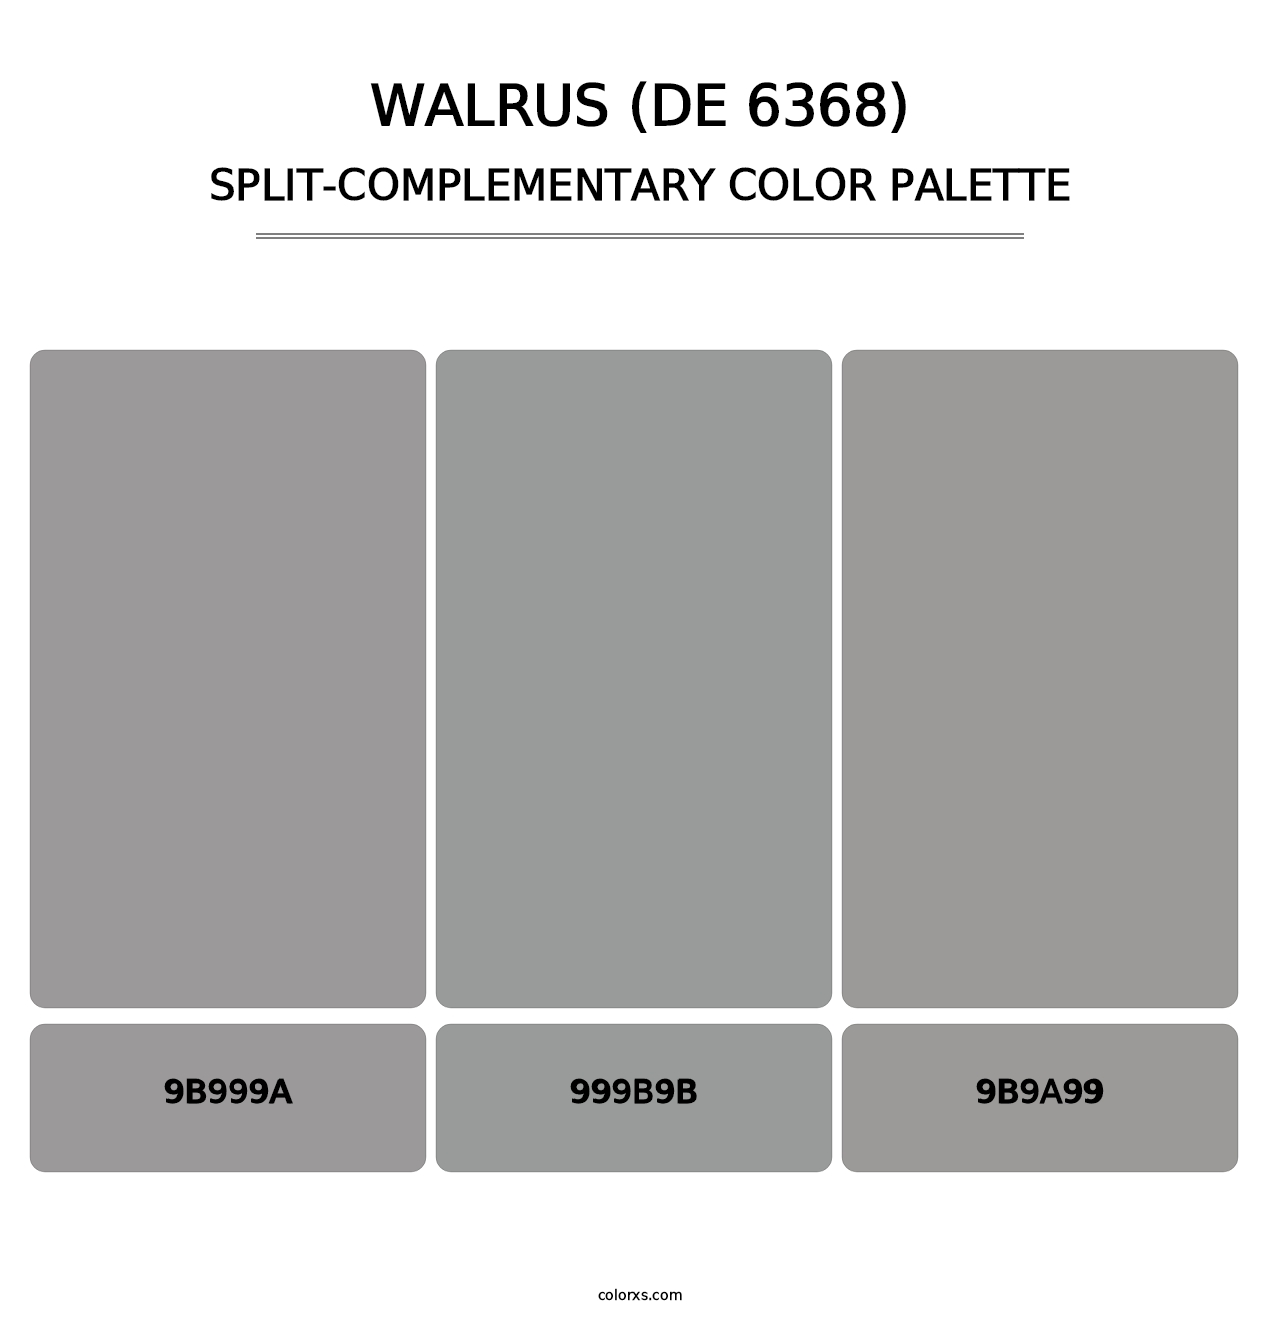 Walrus (DE 6368) - Split-Complementary Color Palette